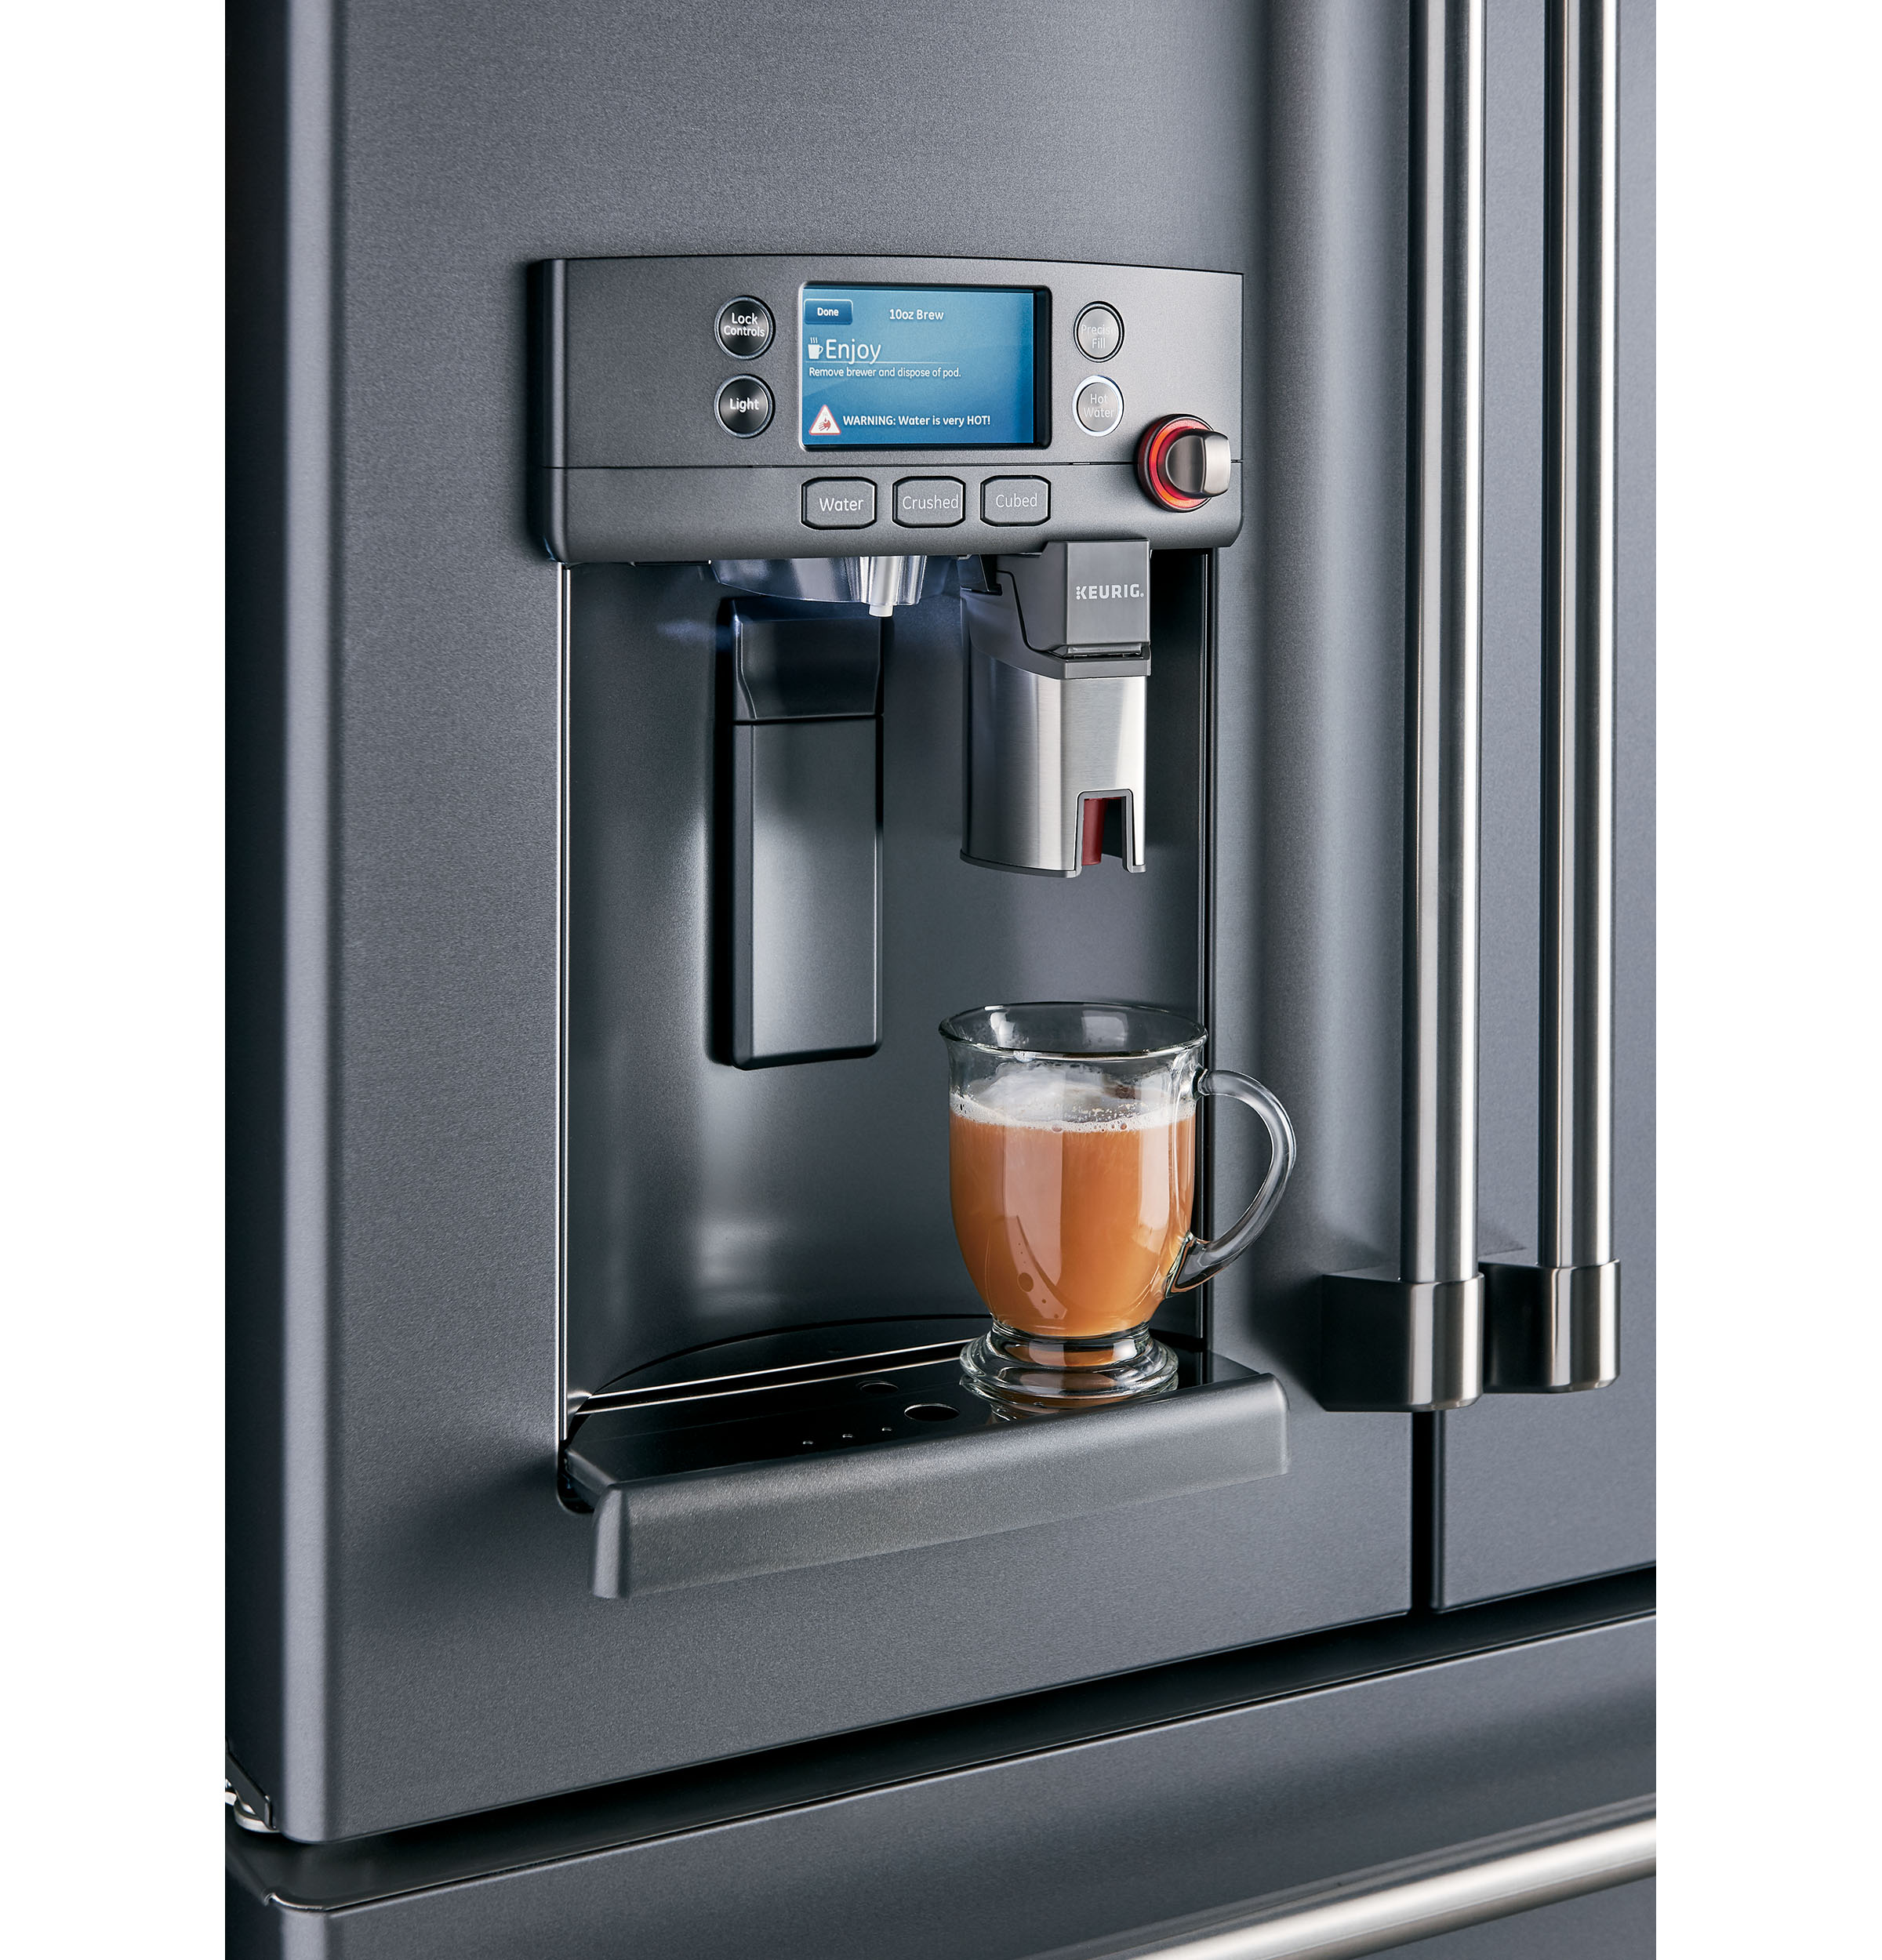 Keurig® K-cup® brewing system